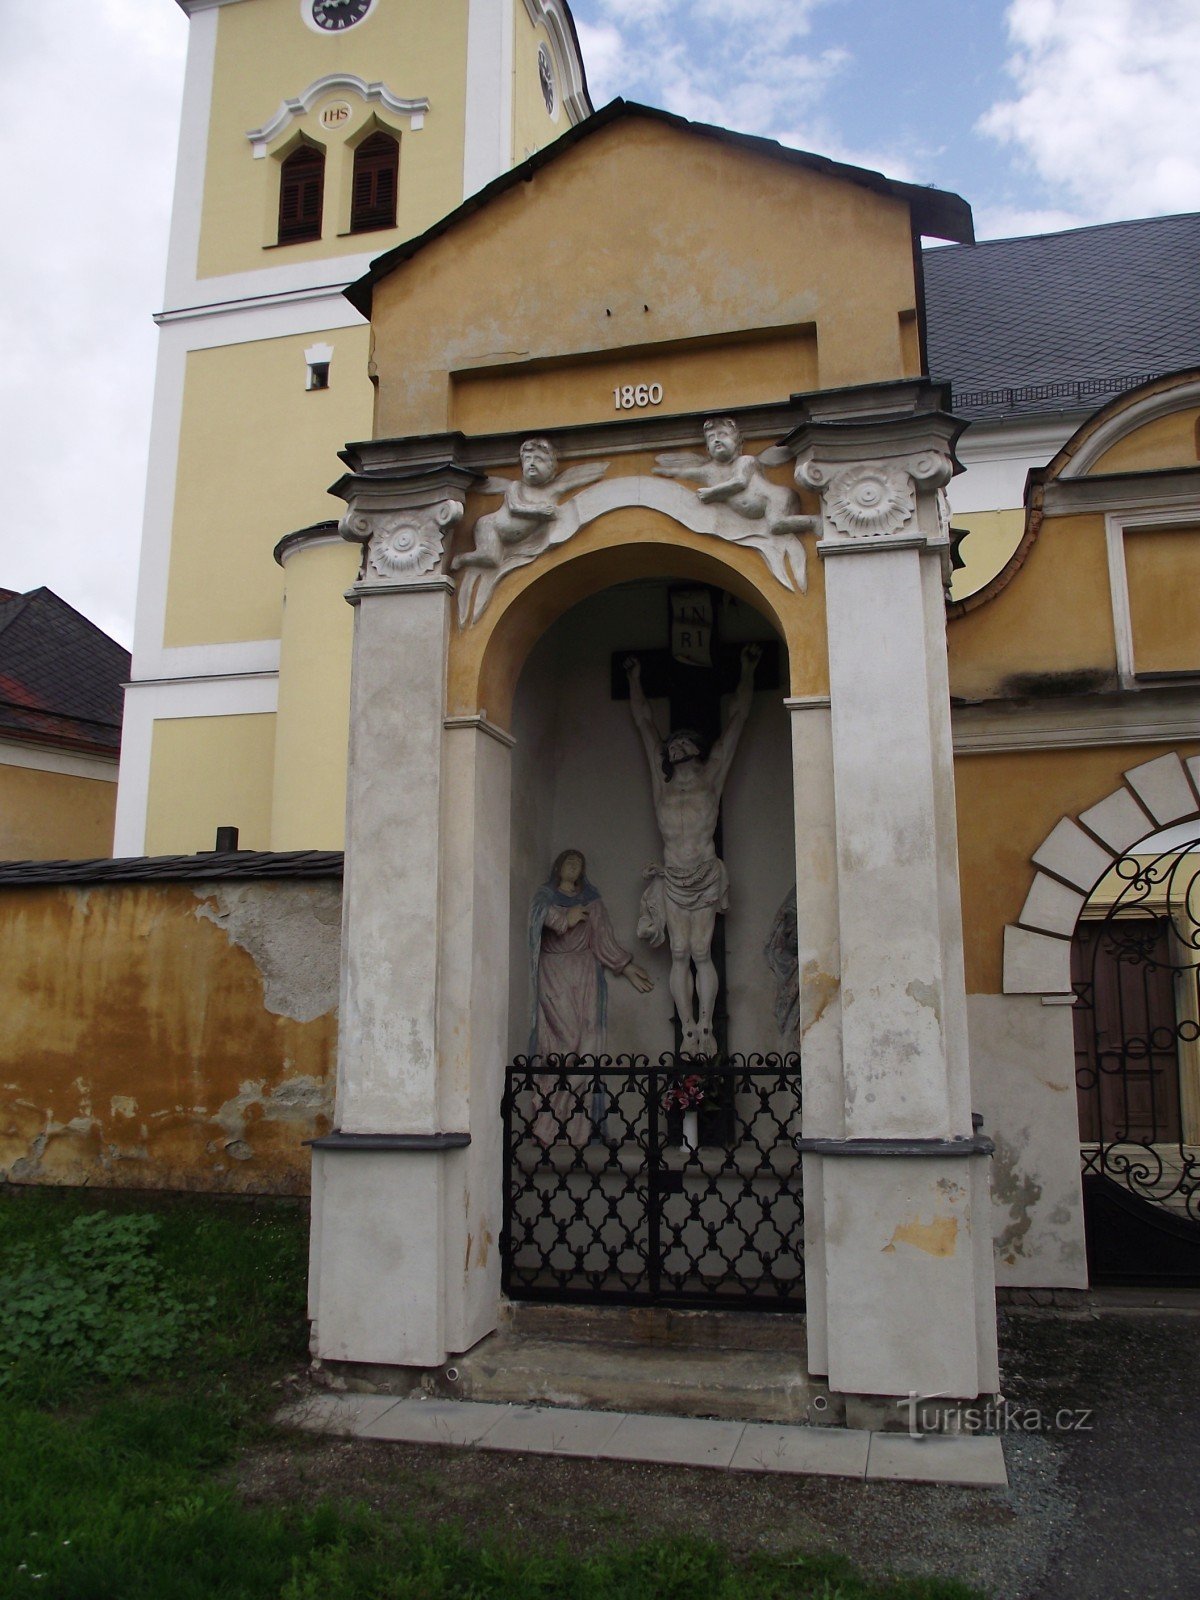 Moravičany – un sat plin de (nu doar mici) monumente